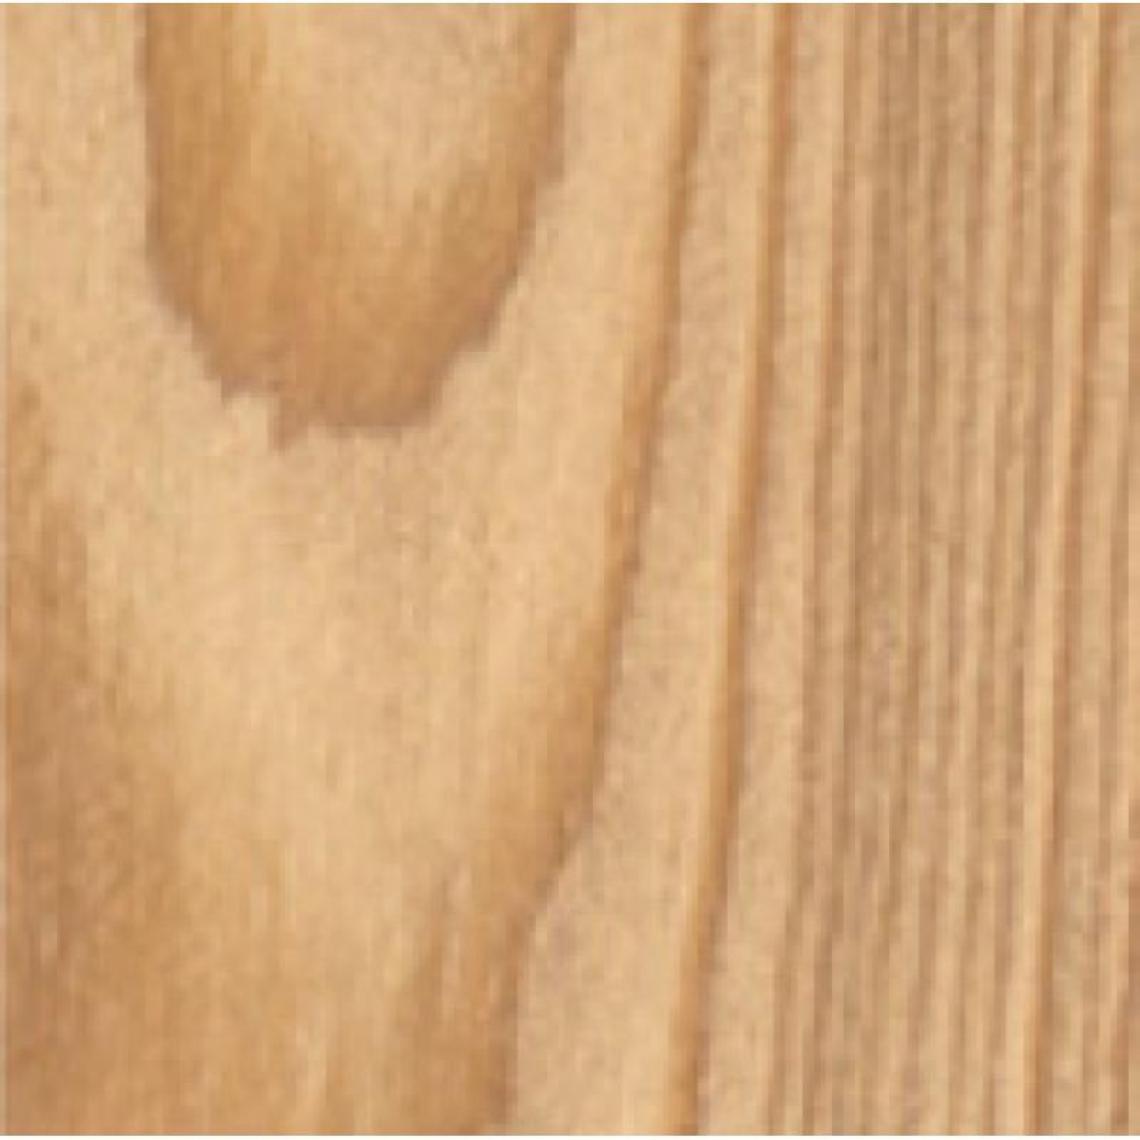 Blanchon - Lasures Aqua Polyuréthane Tech-Wood teinte chêne clair bidon de 1 - Produit de finition pour bois